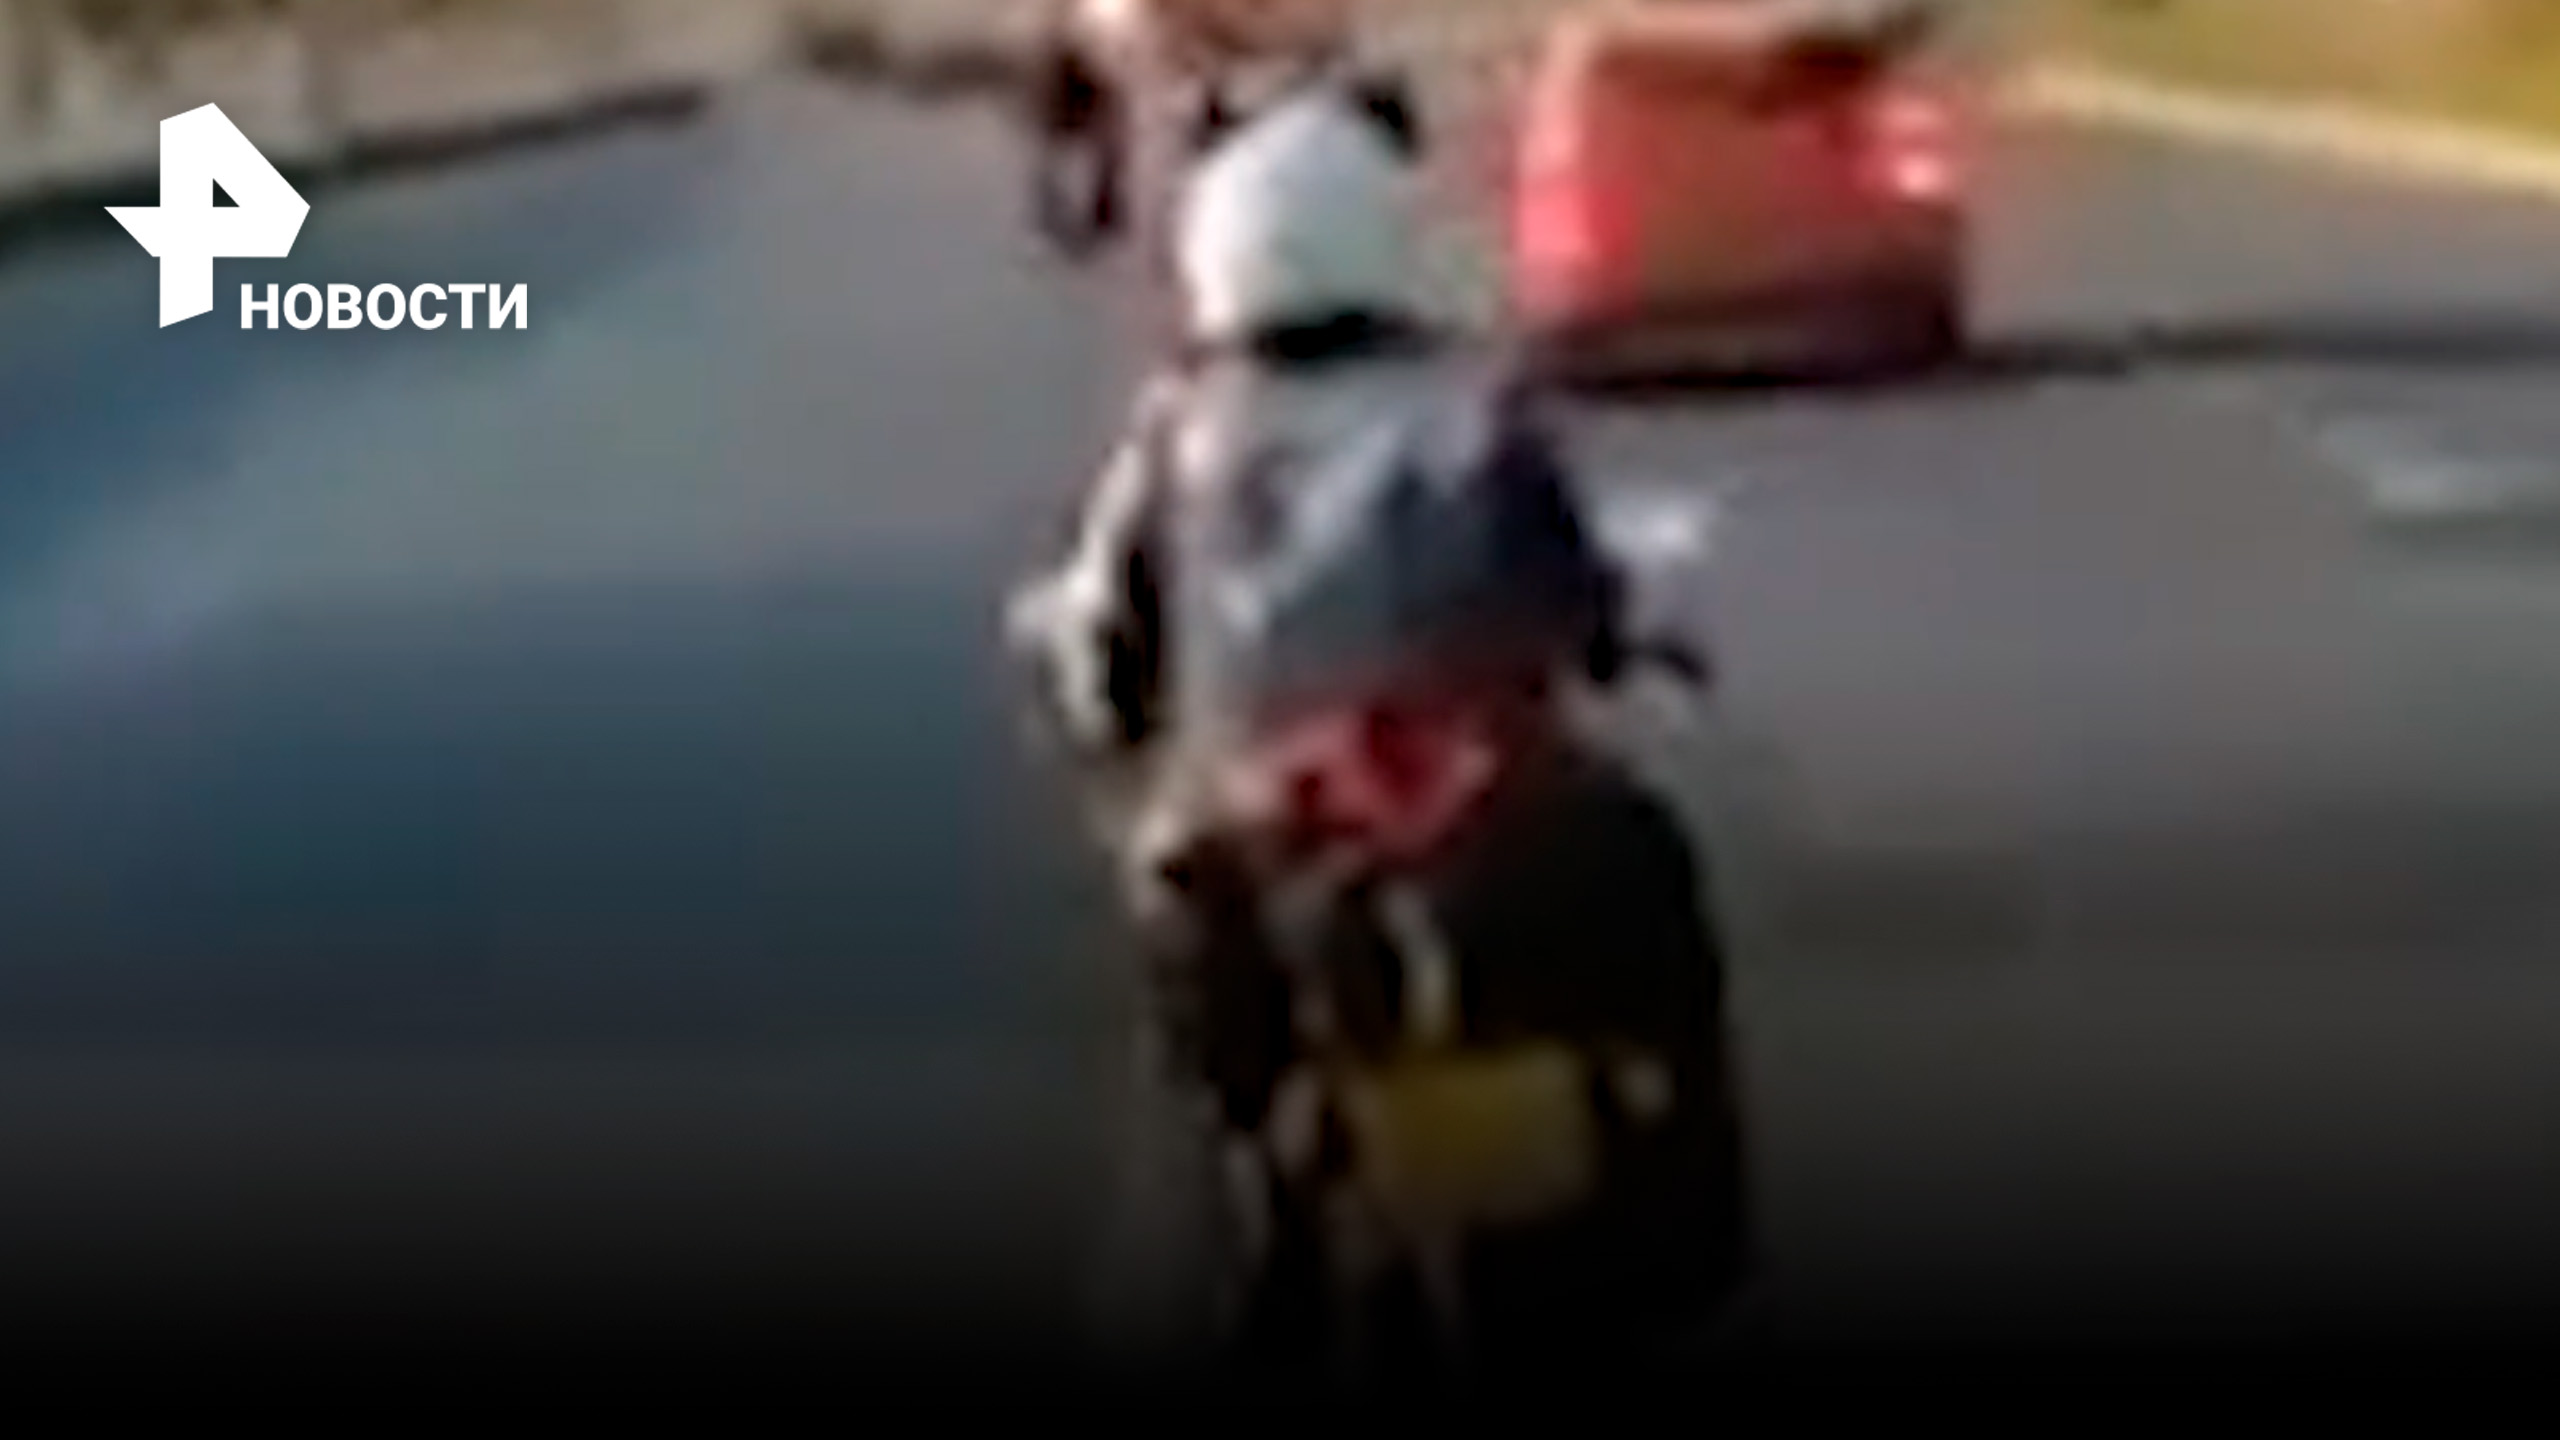 Перестроение по-азиатски: водитель авто необдуманным маневром травмировал девушку-мотоциклиста